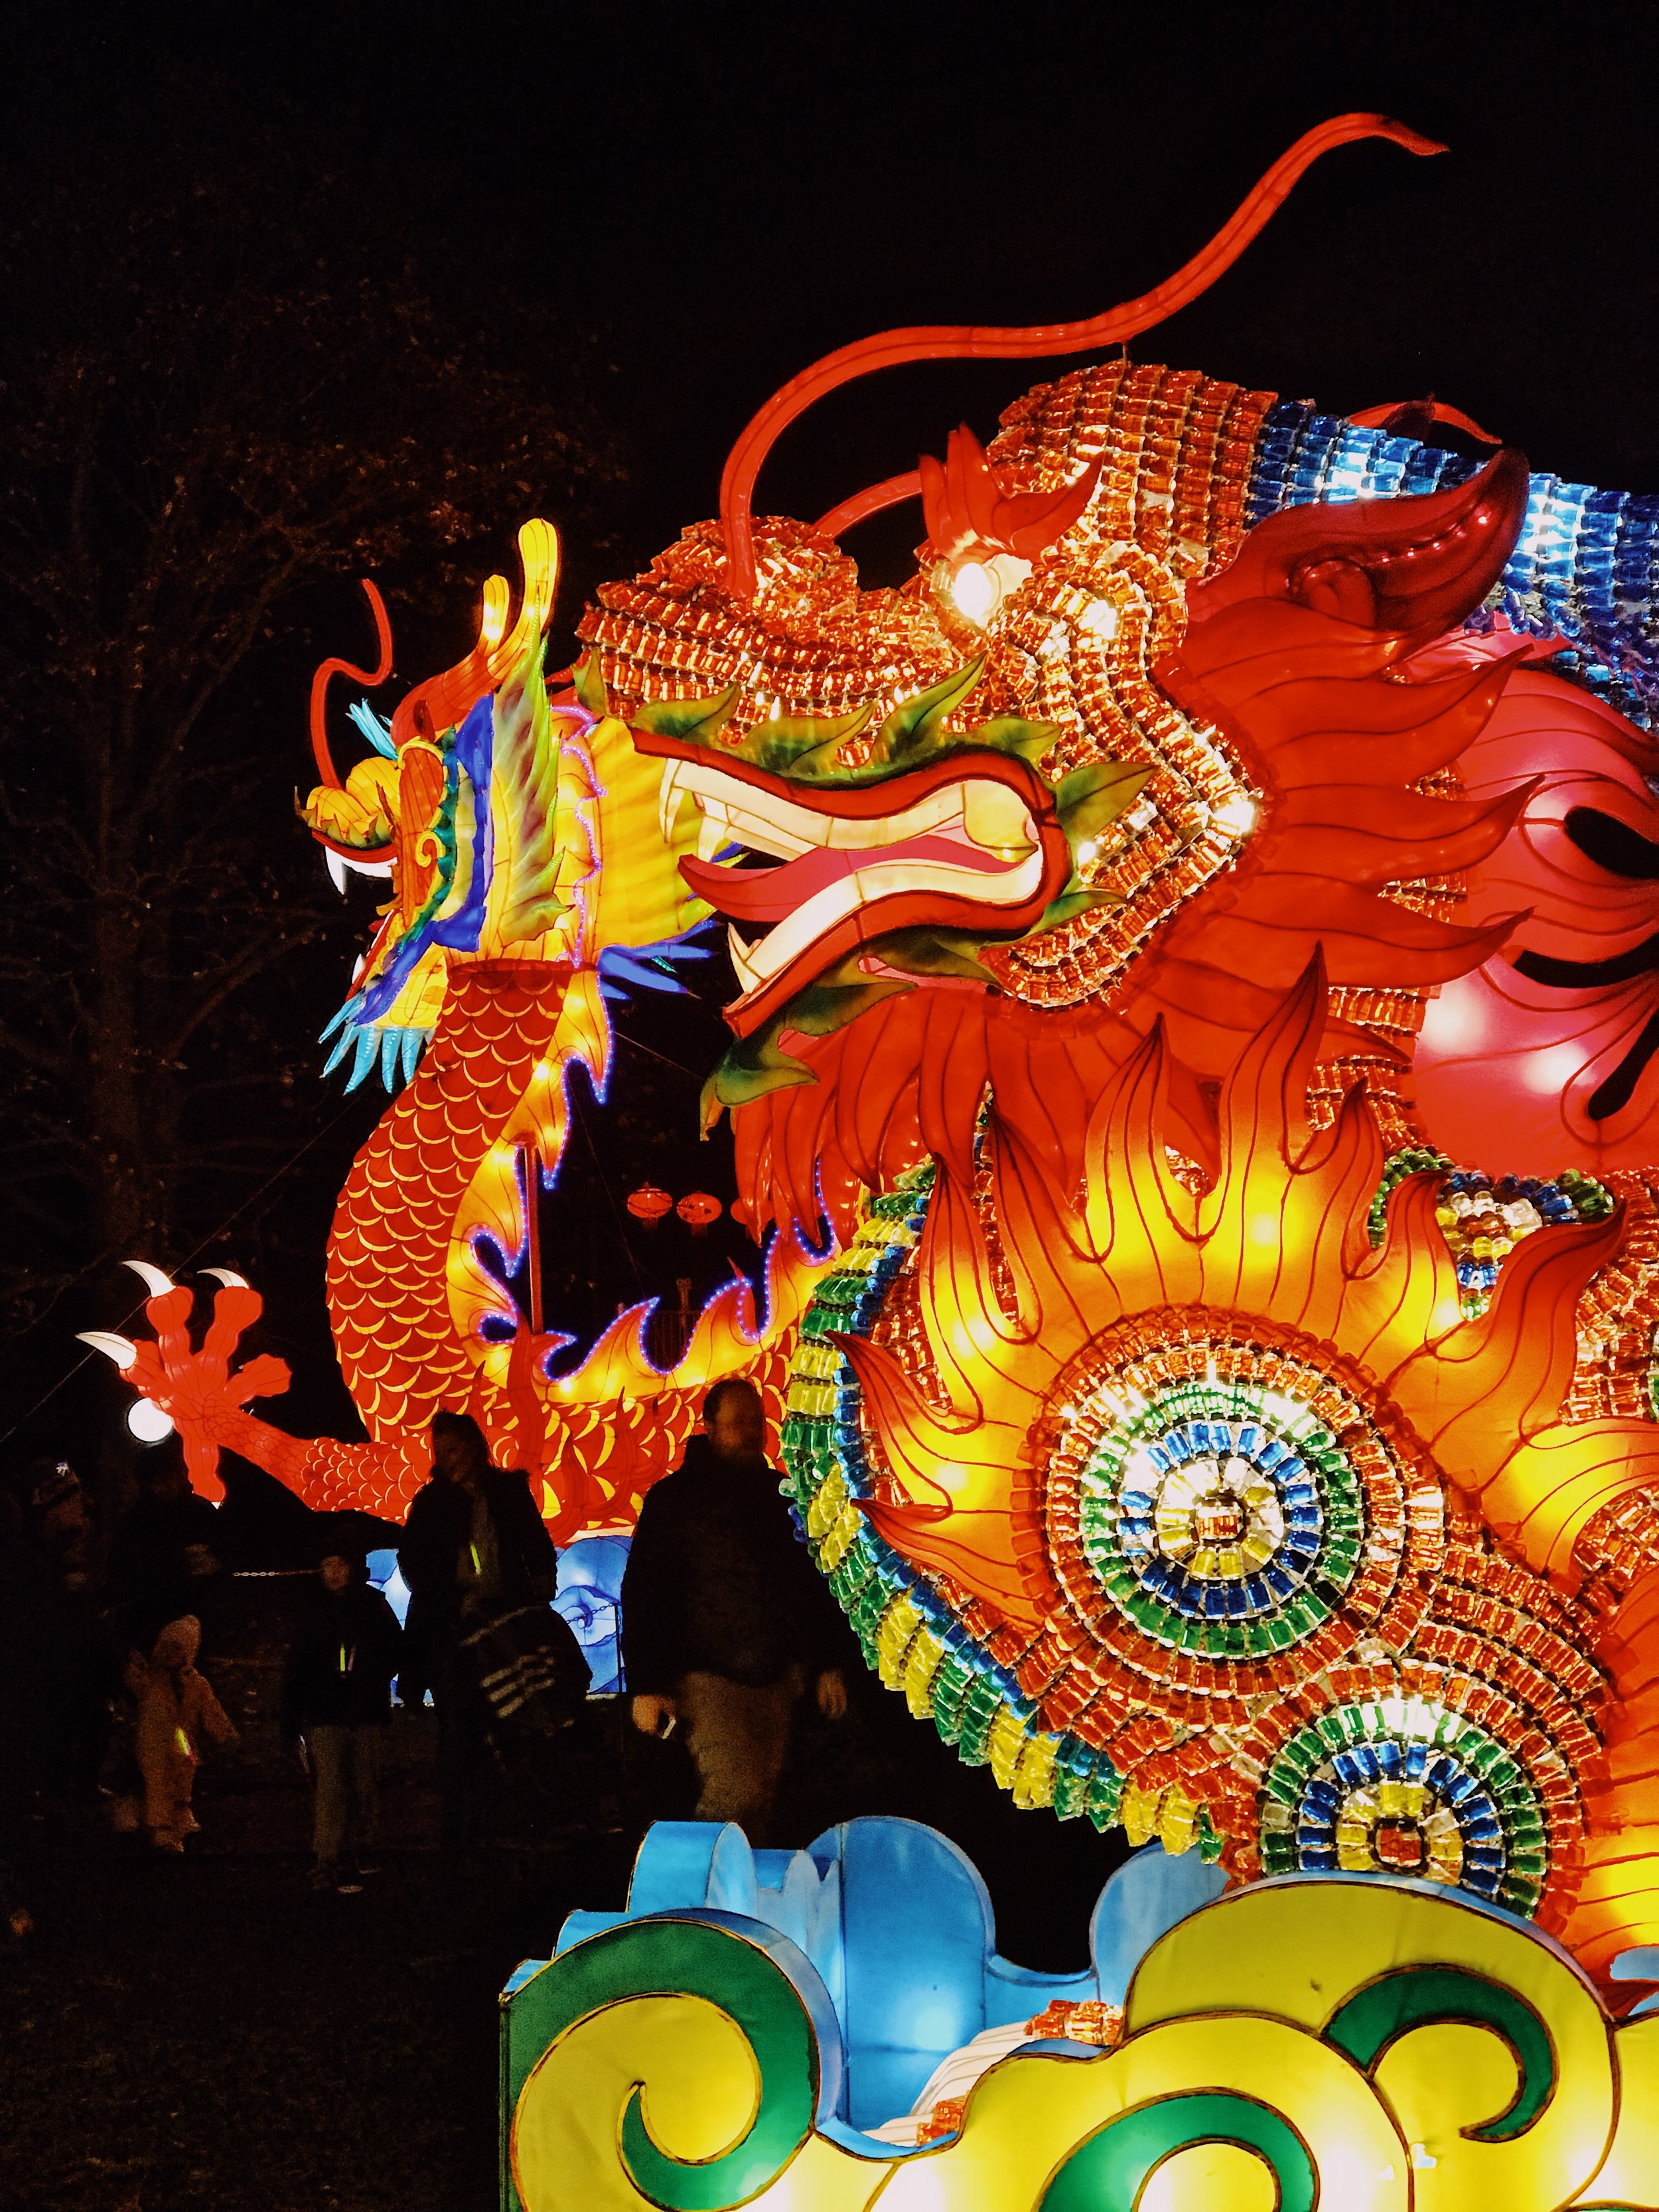 Dragon Chinese lantern display at Edinburgh Zoo